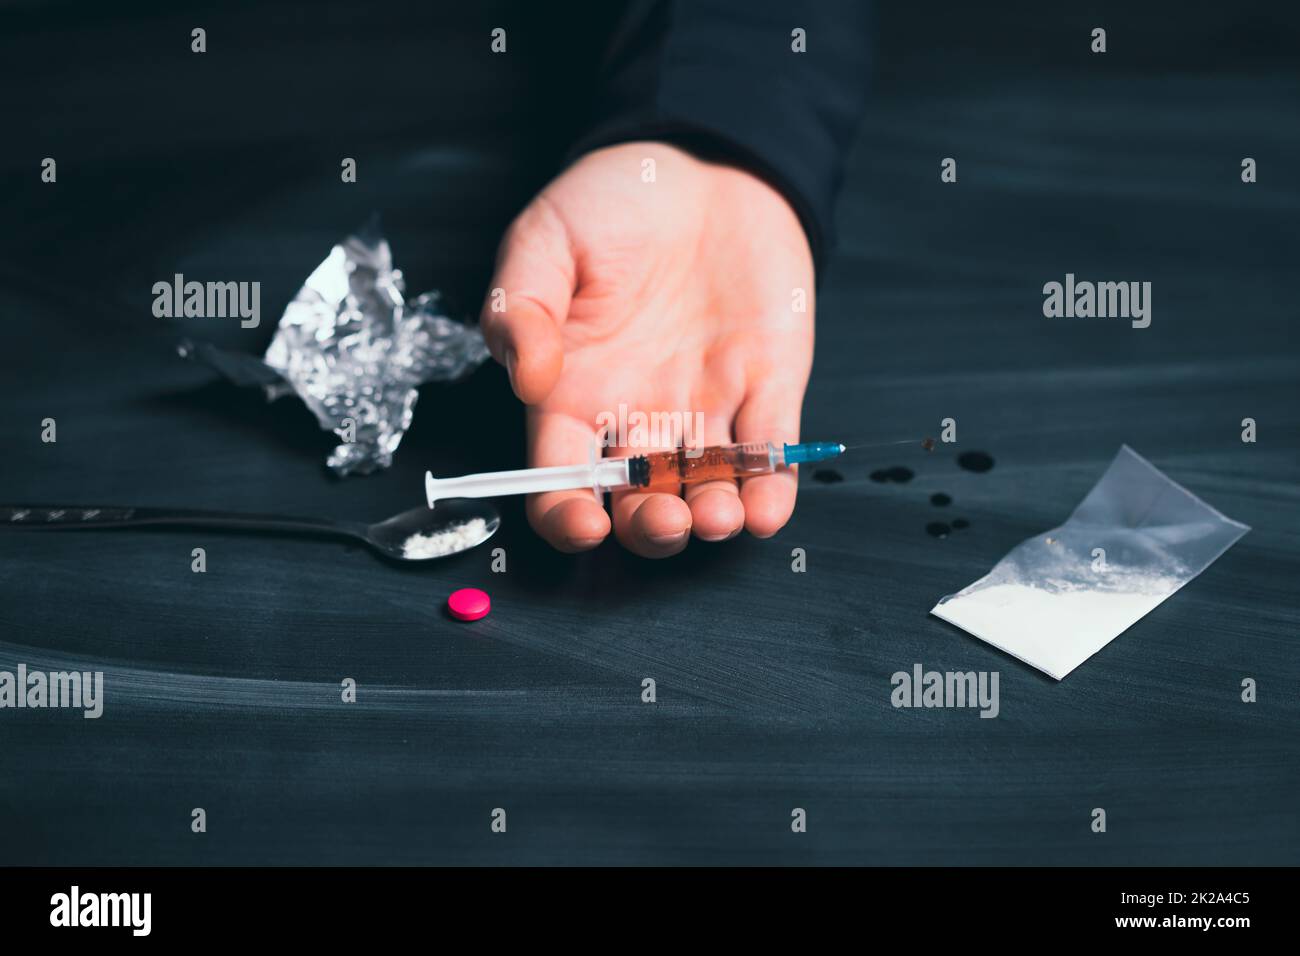 Addict man with syringe using drugs. Stock Photo